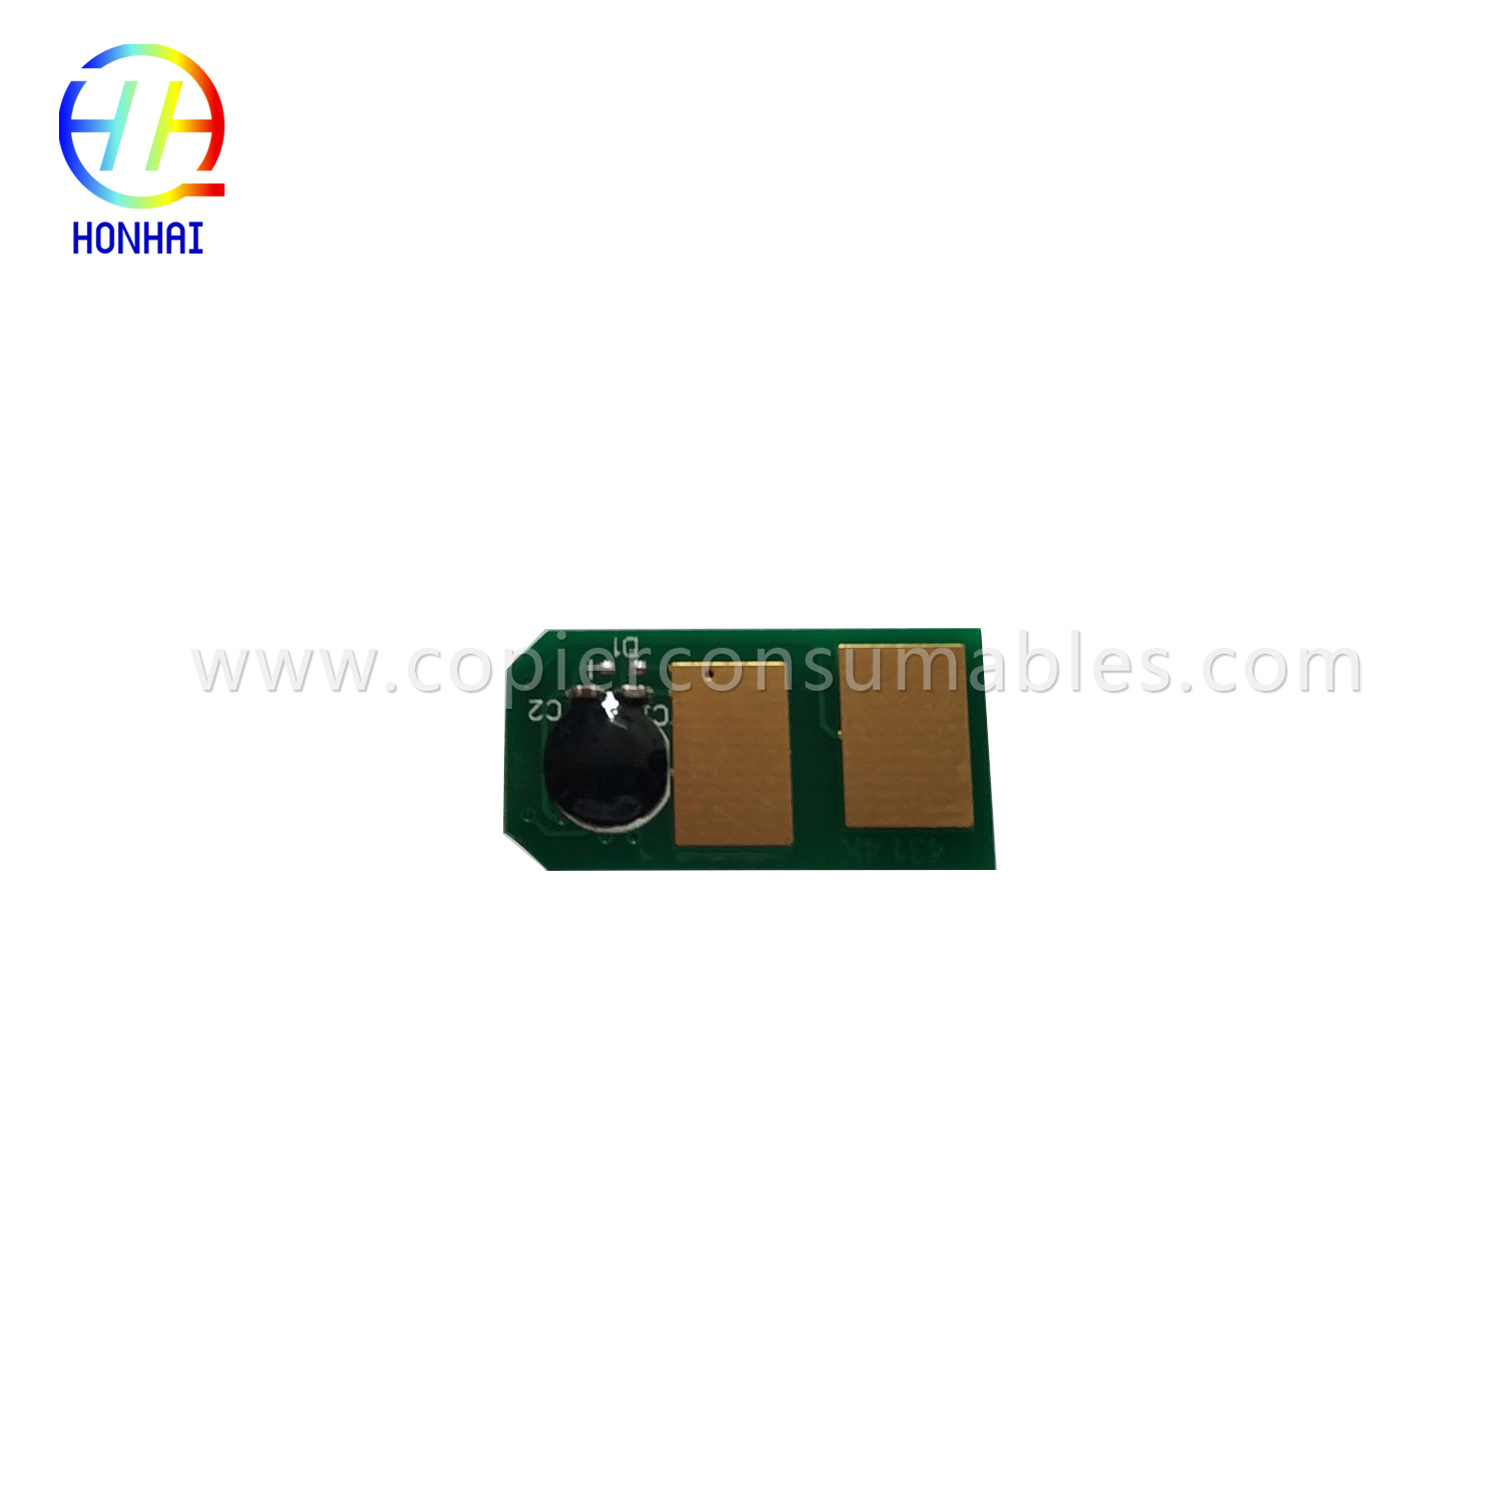 Toner Cartridge Chip foar Oki B411 B431 MB461 MB471 MB491.jpg-1 拷贝